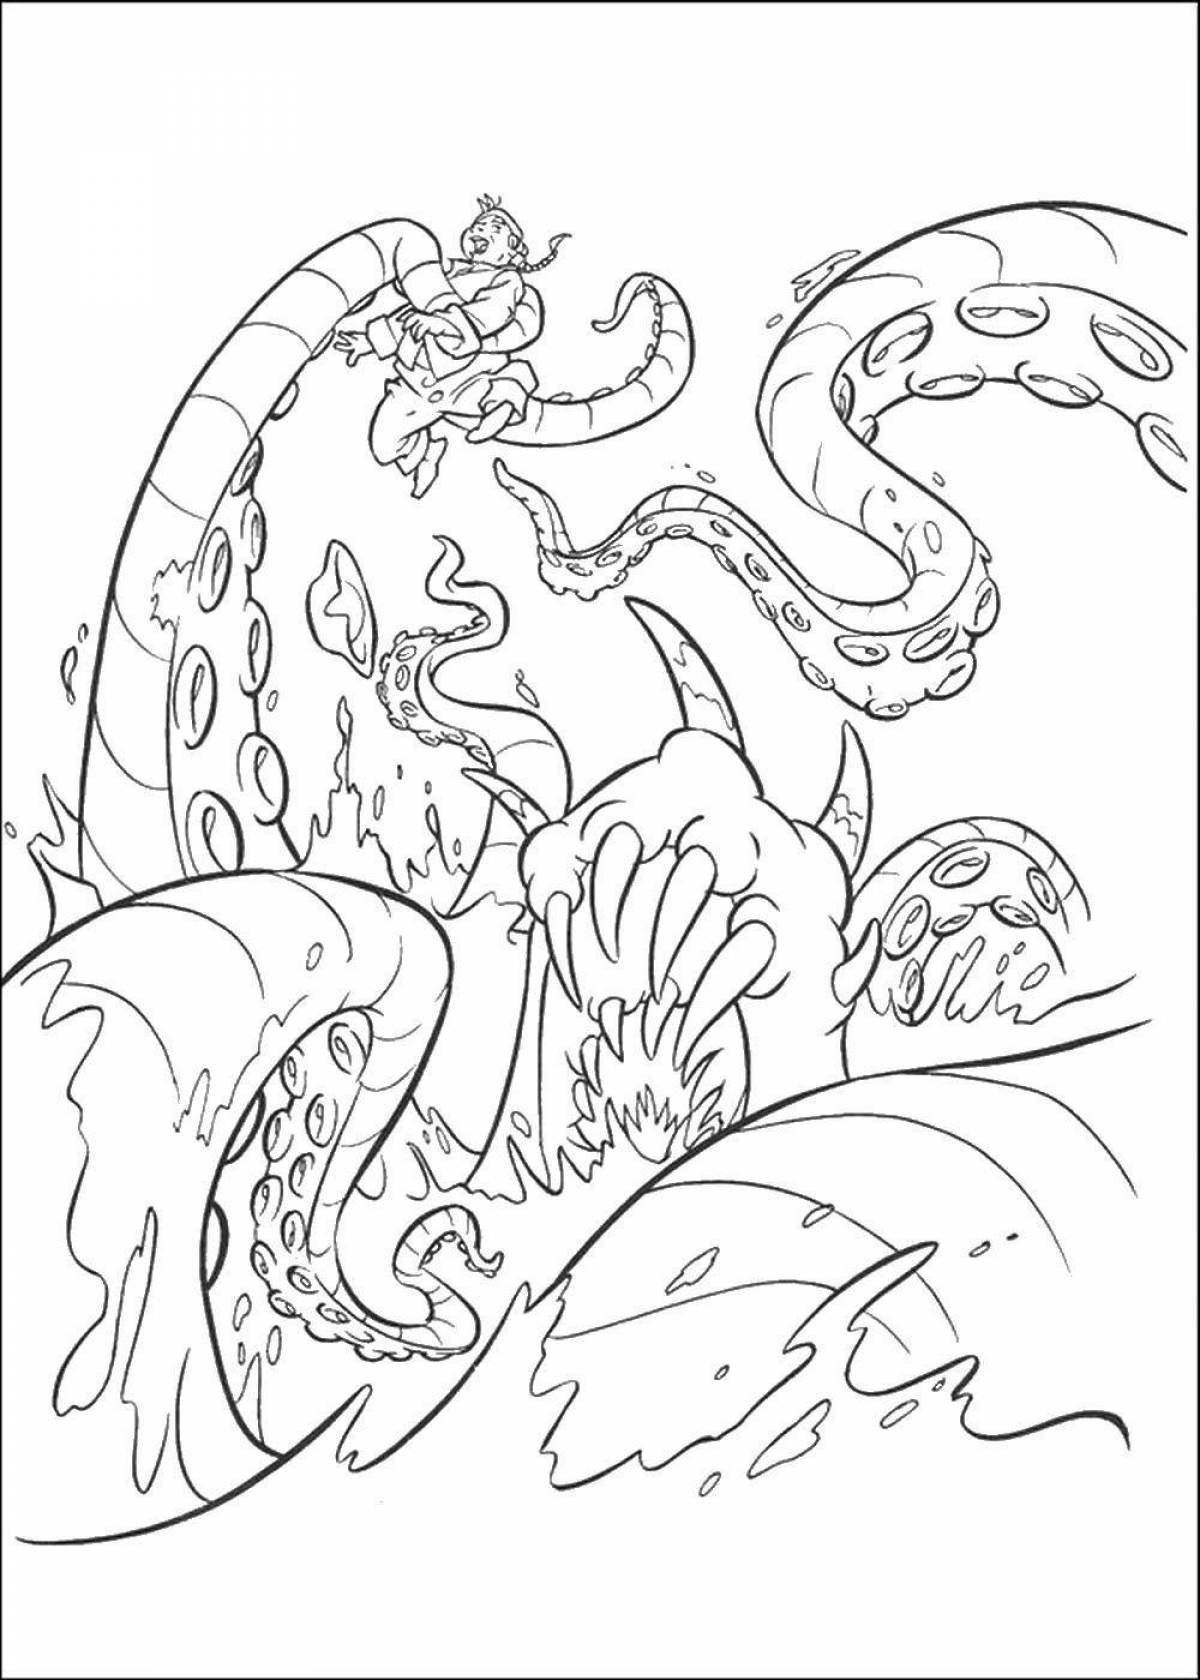 Shining kraken coloring page